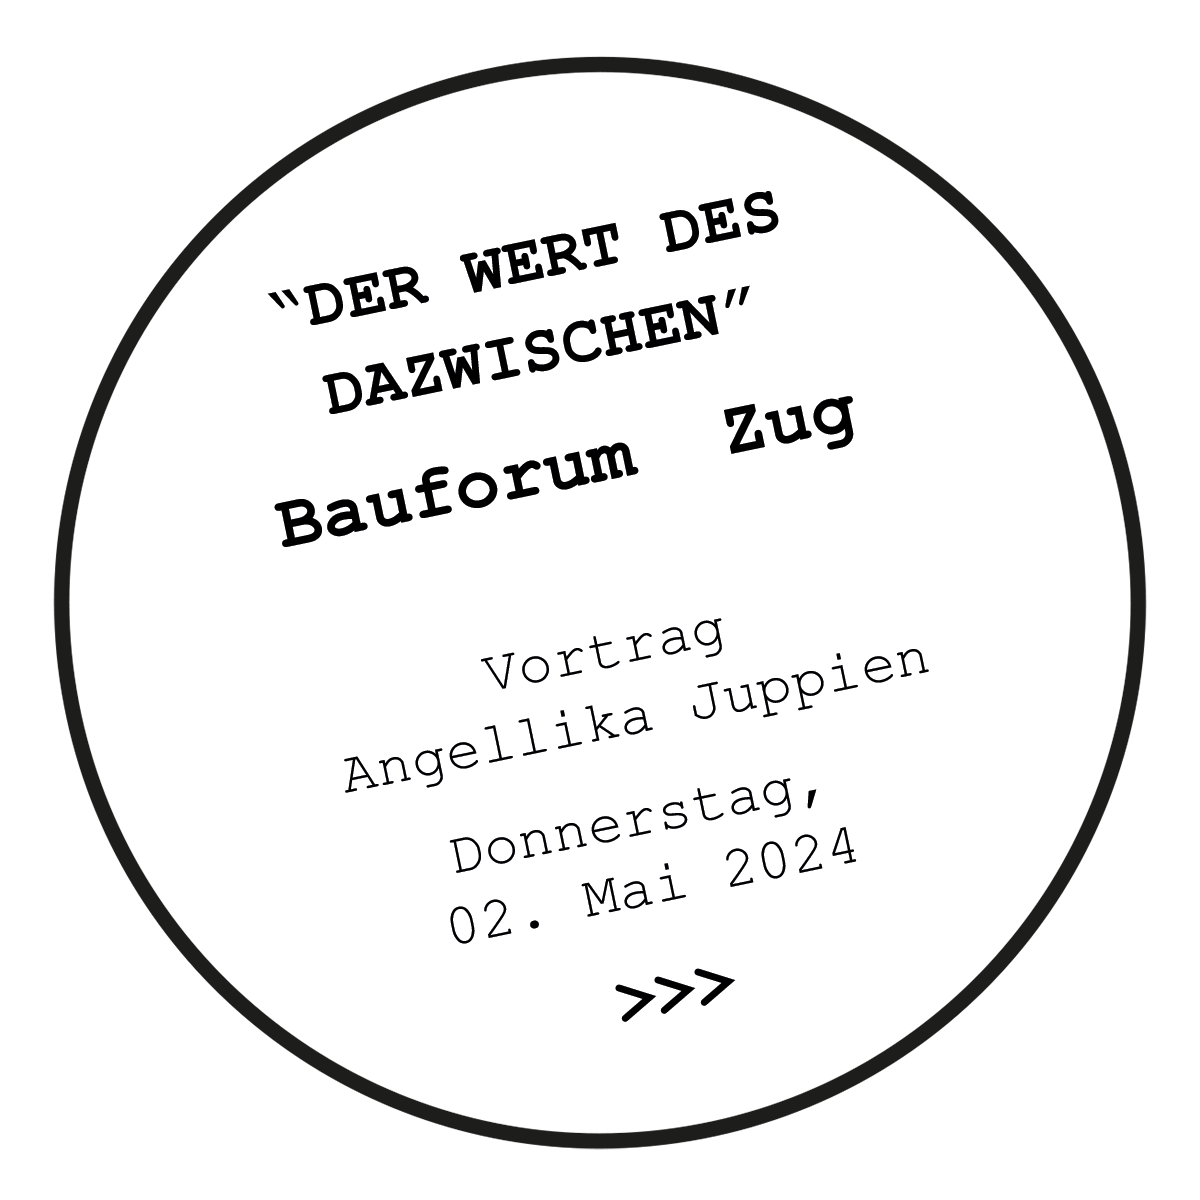 'DER WERT DES DAZWISCHEN' - Bauforum Zug -  Vortrag - Angellika Juppien - Donnerstag, 02. Mai 2024